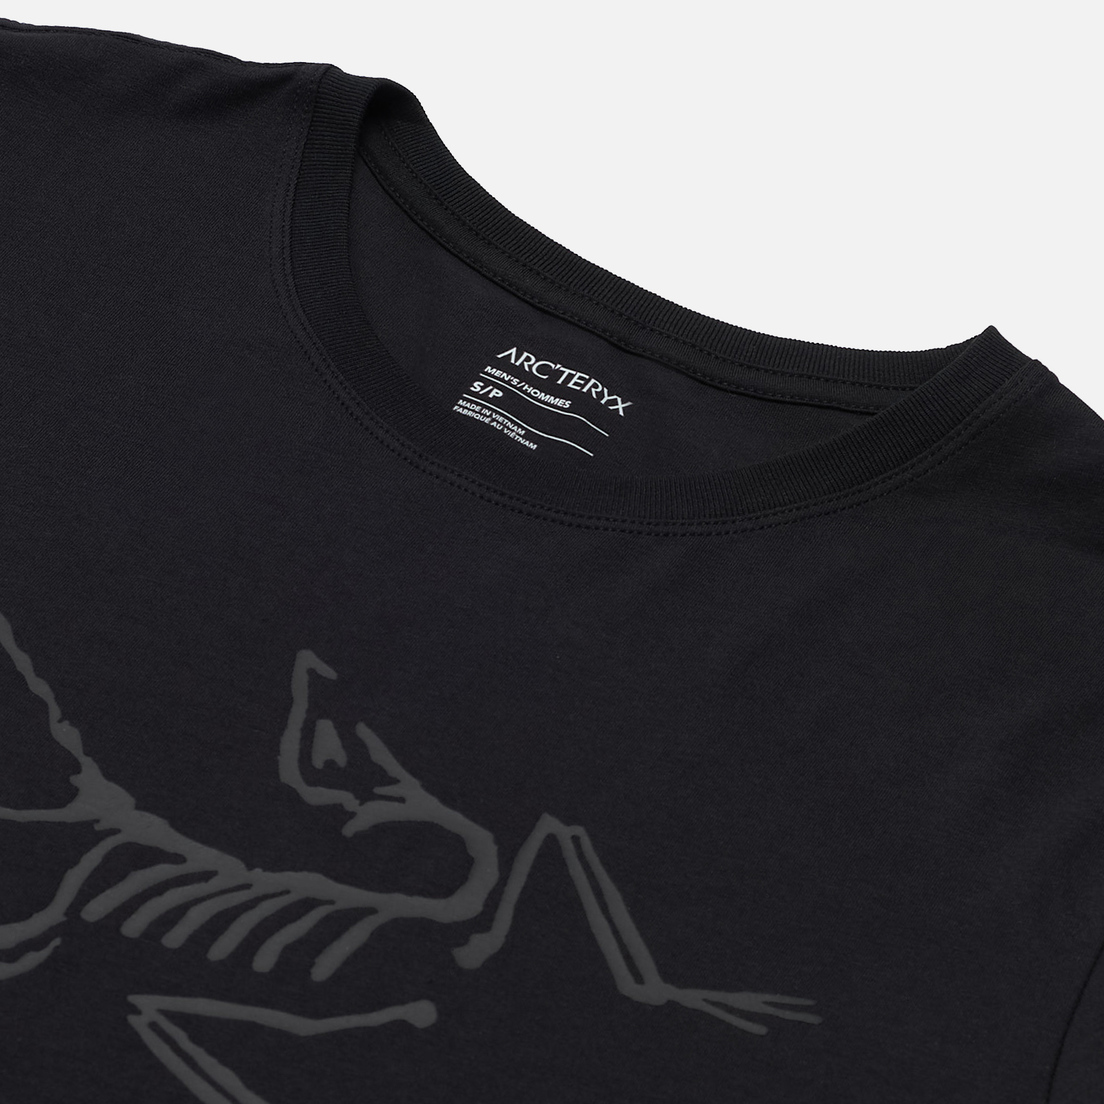 Arcteryx Мужская футболка Archaeopteryx SS